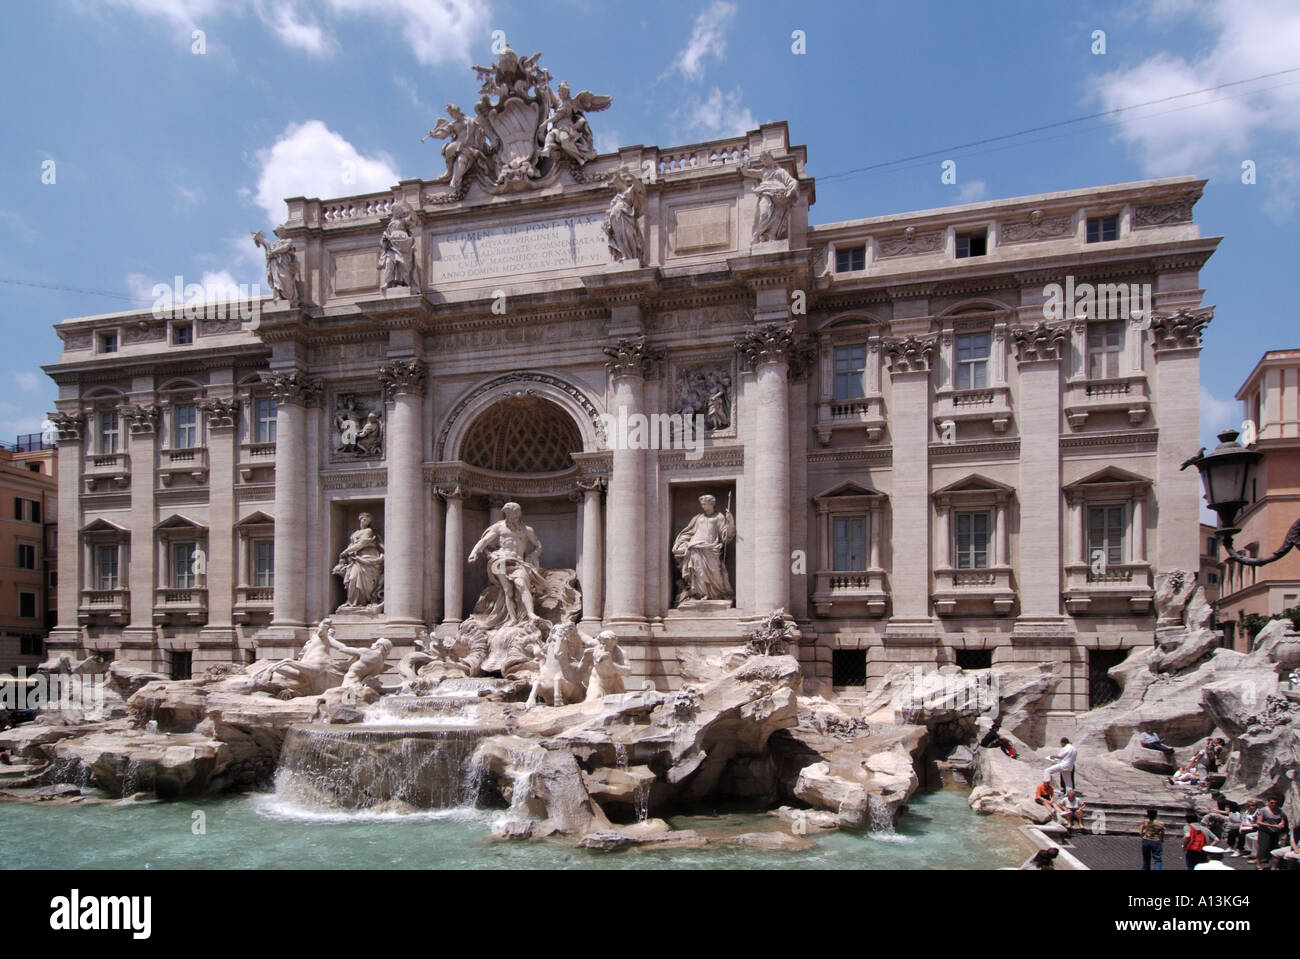 La célèbre fontaine de Trevi sculptures et statues de l'architecte italien Nicola Salvi principalement en pierre de Travertine une attraction touristique à Rome Italie Banque D'Images